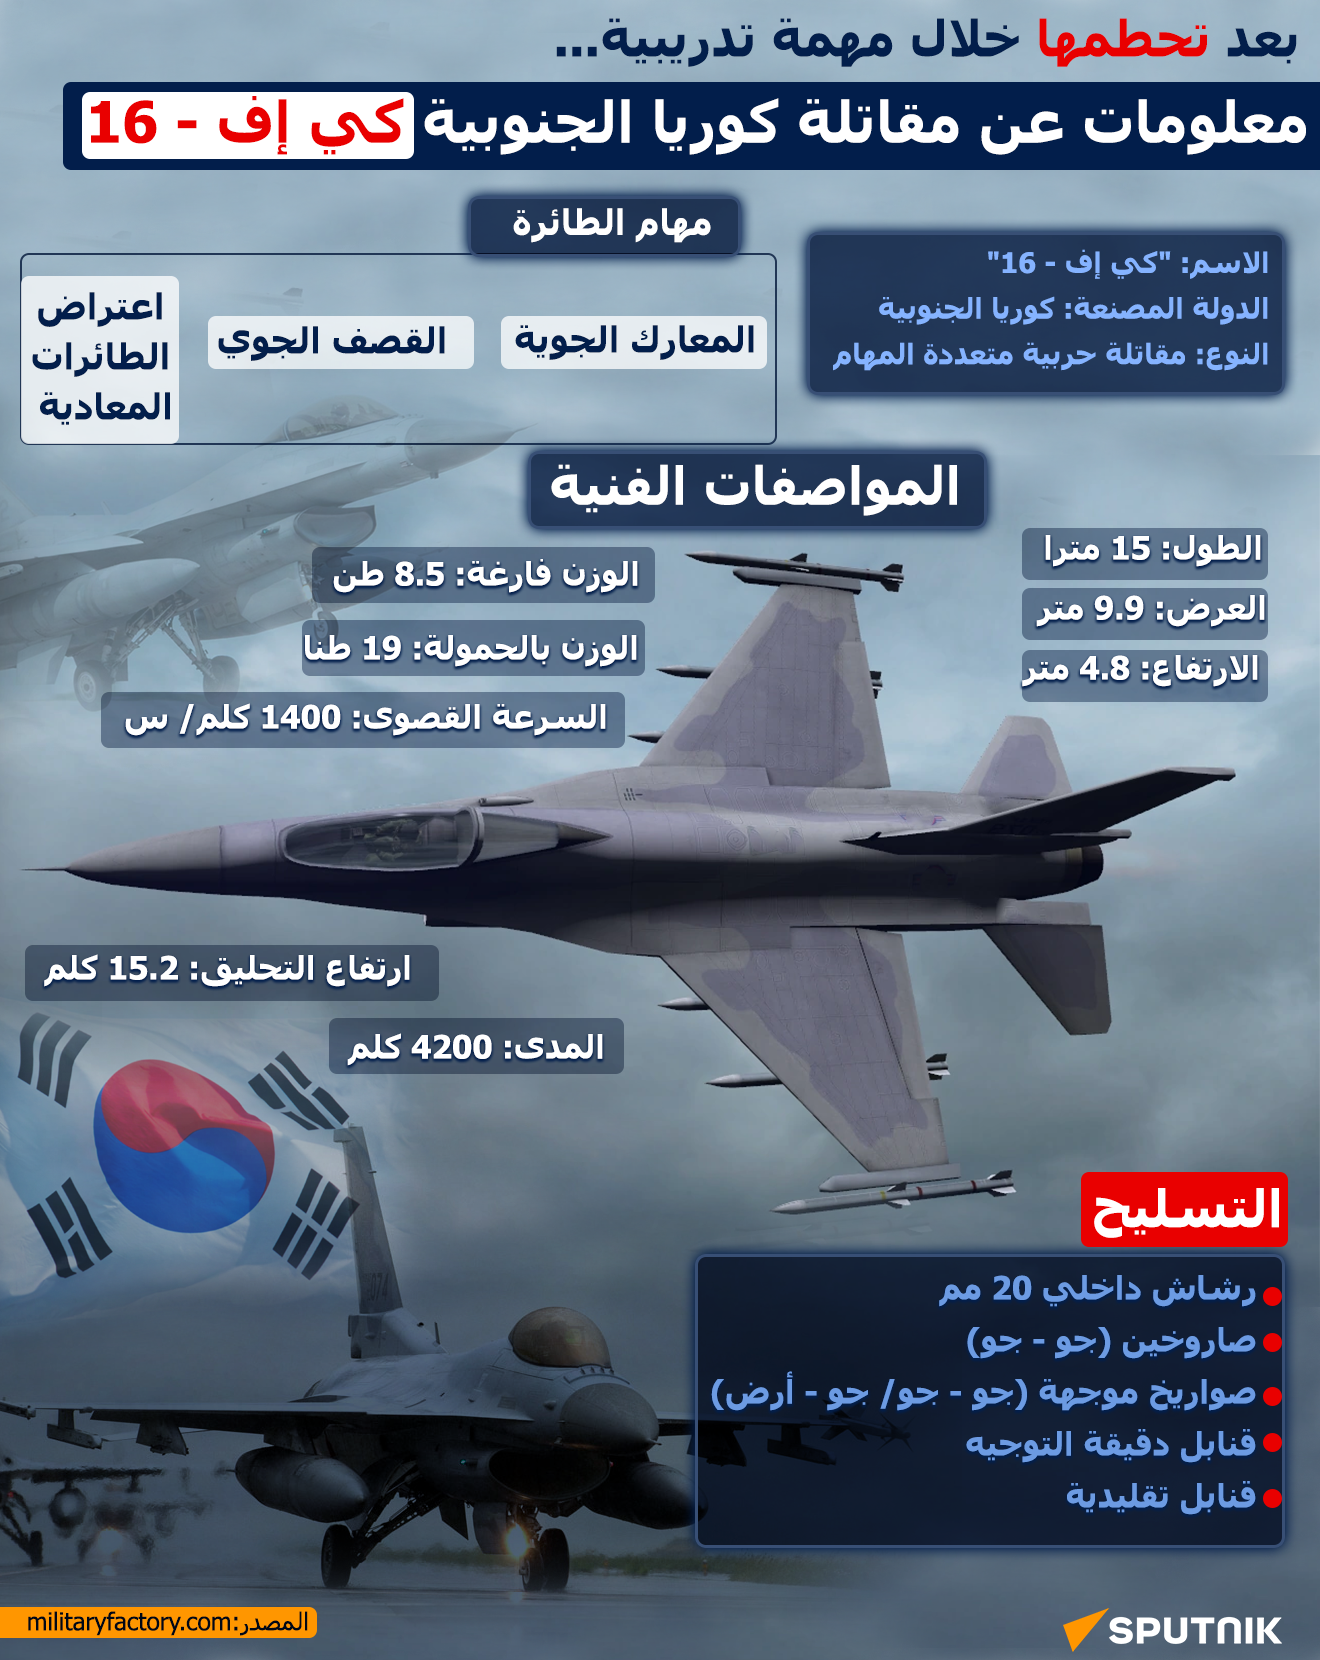 بعد تحطمها خلال مهمة تدريبية... معلومات عن مقاتلة كوريا الجنوبية كي إف - 16 - انفو للموقع - سبوتنيك عربي